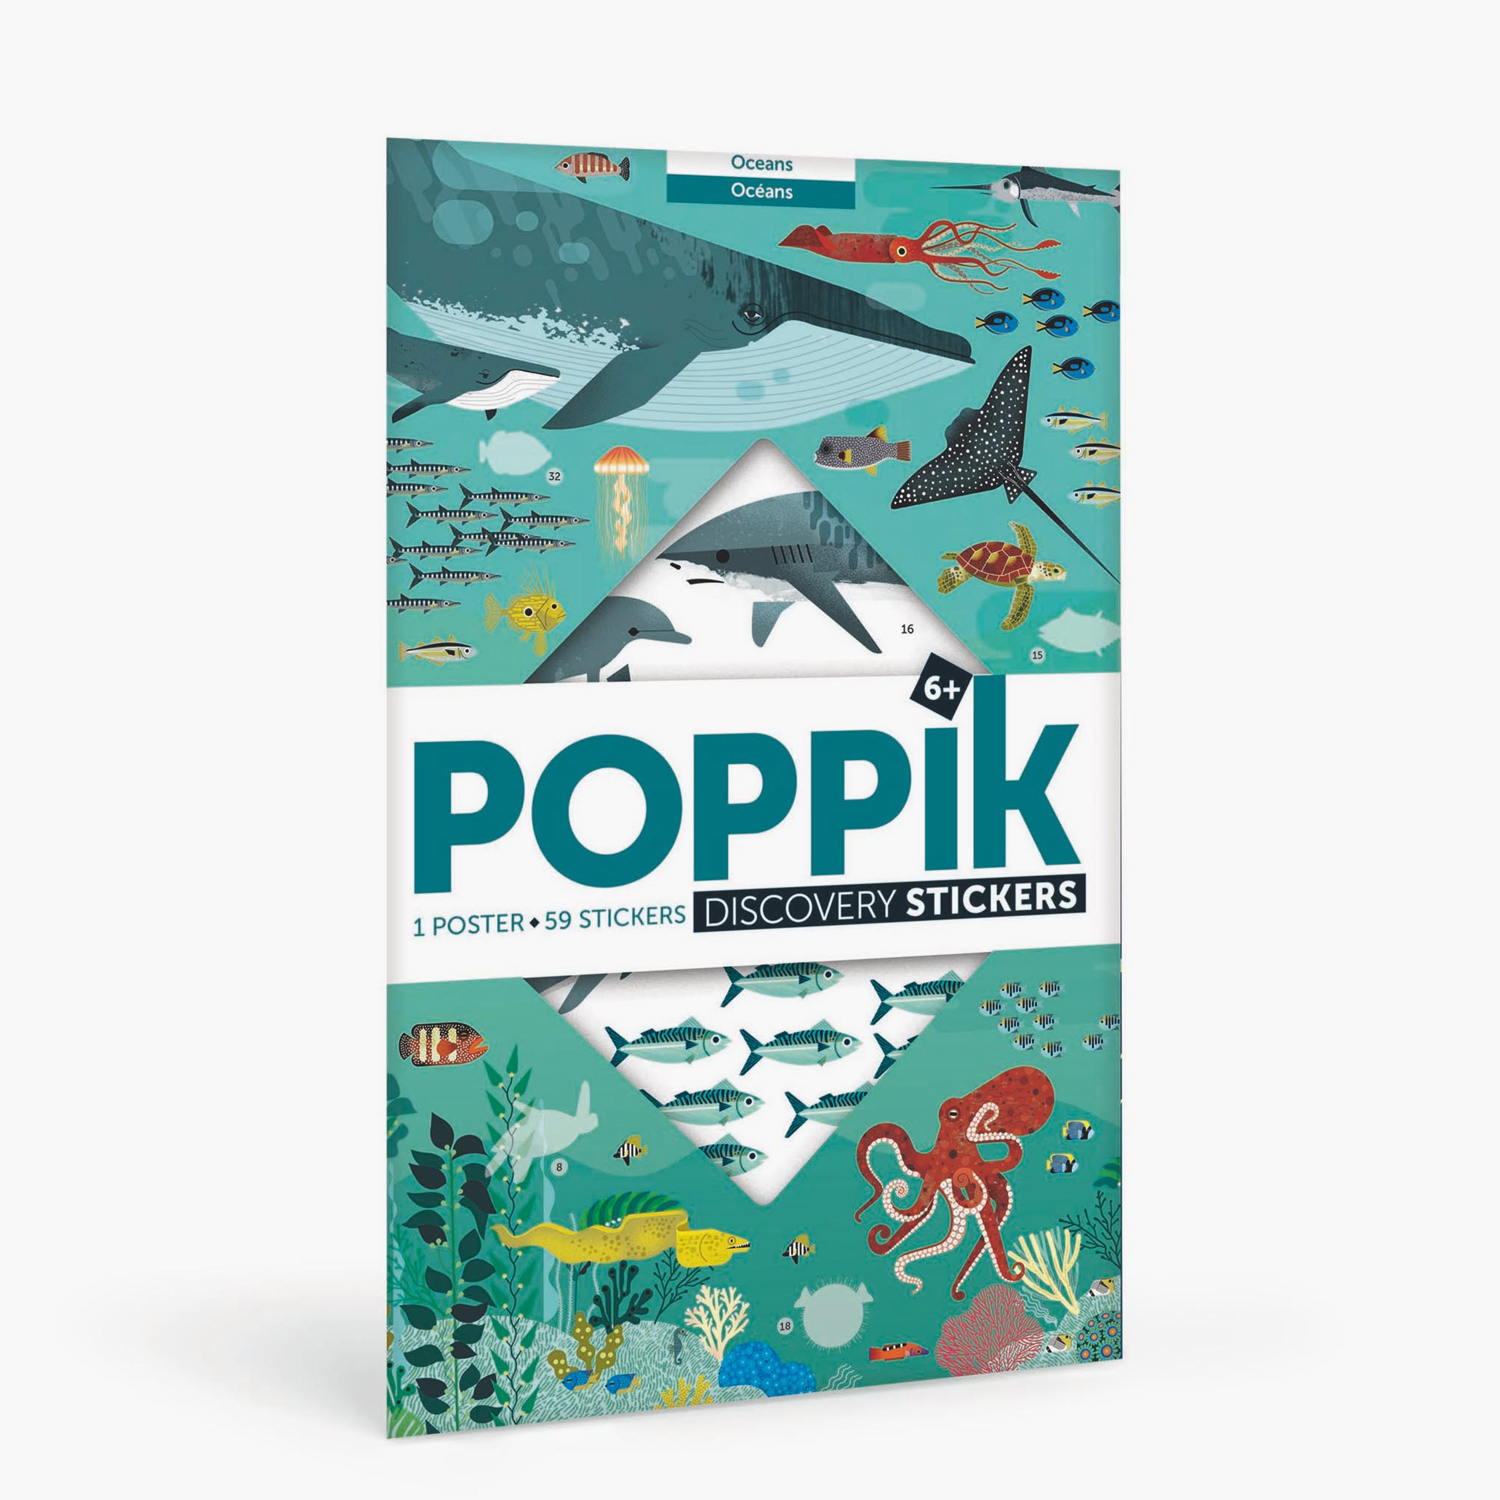 poppik-oceans-educational-sticker-poster-59-stickers